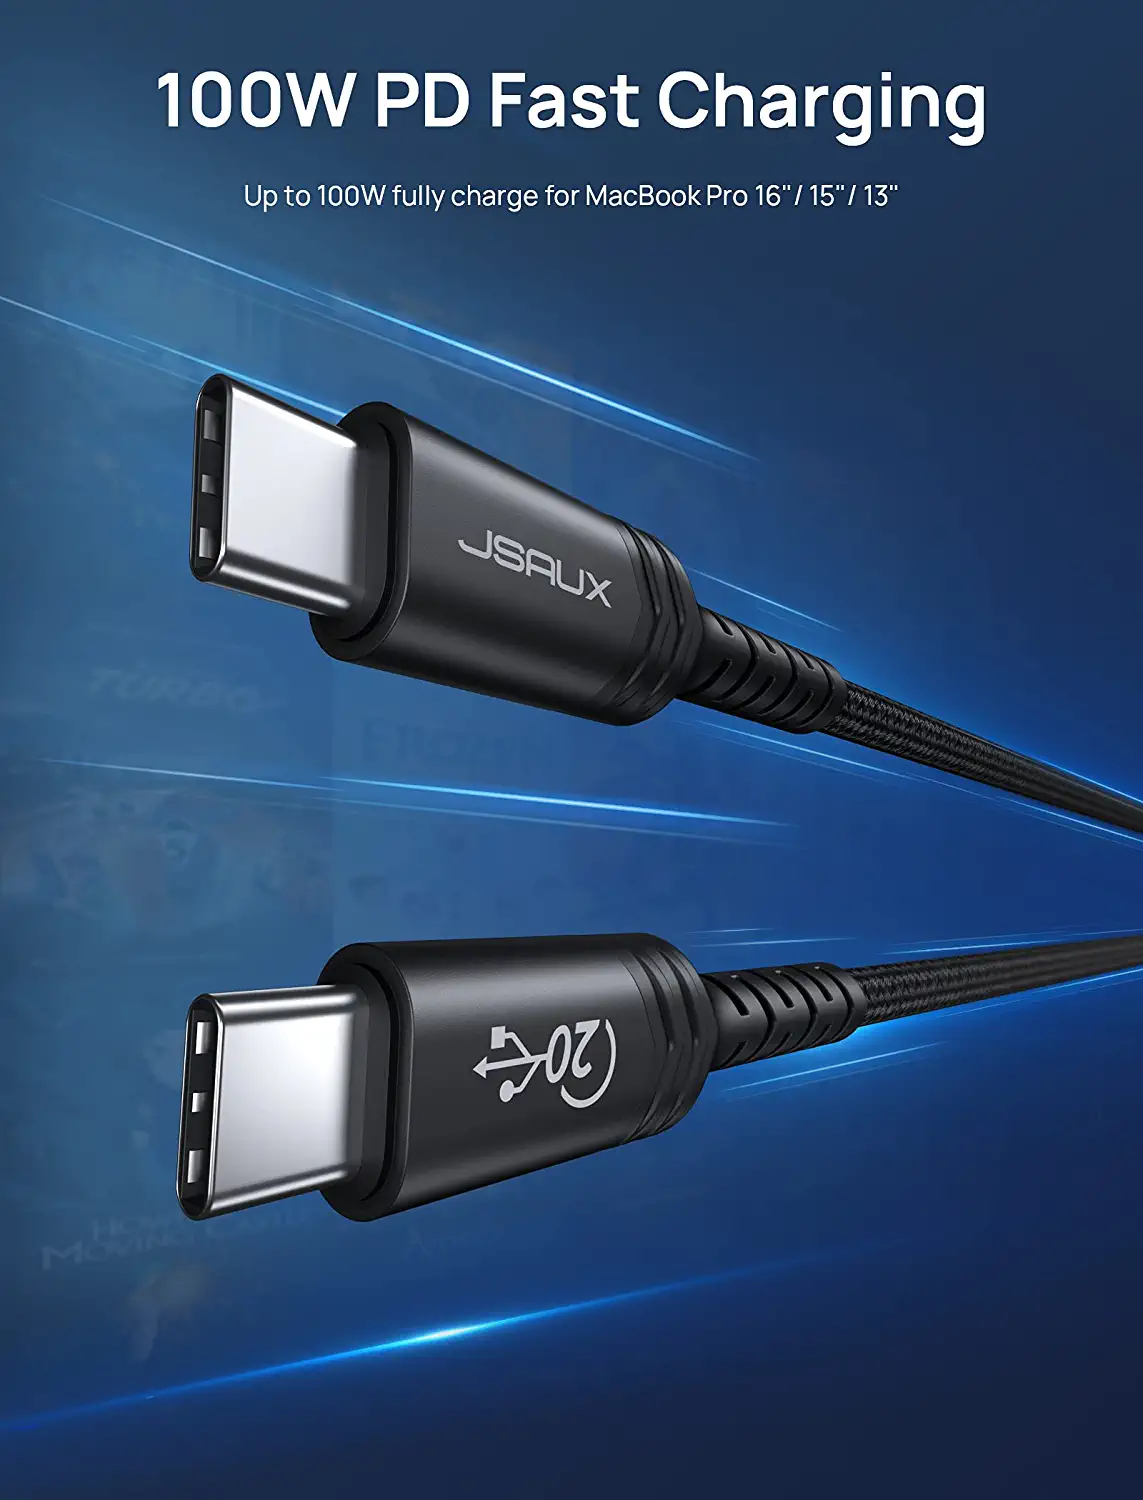 JSAUX Thunderbolt USB C Cable (2M).